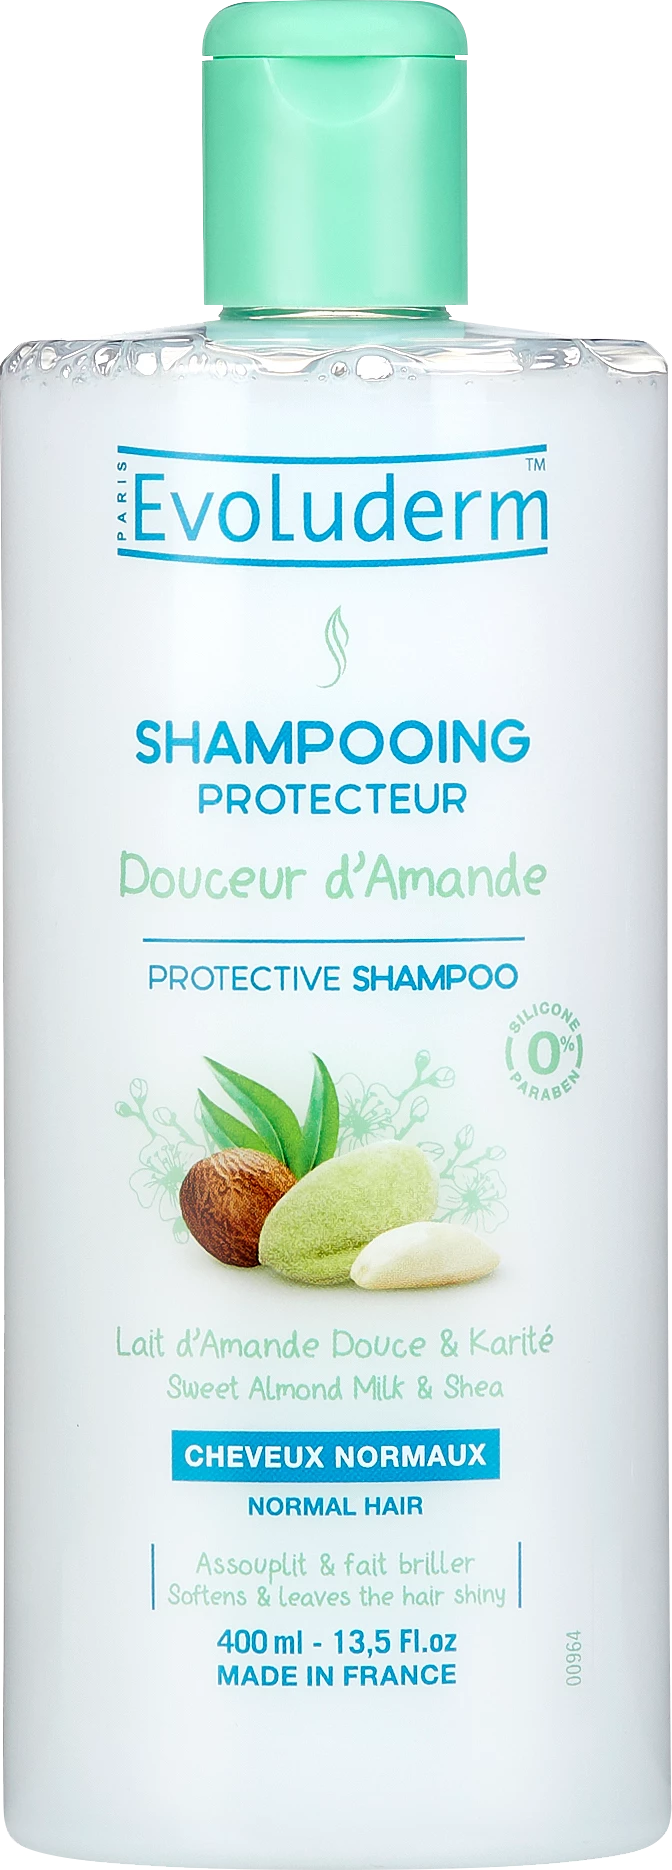 Shampoing Protecteur Douceur D'amande 400ml - Evoluderm